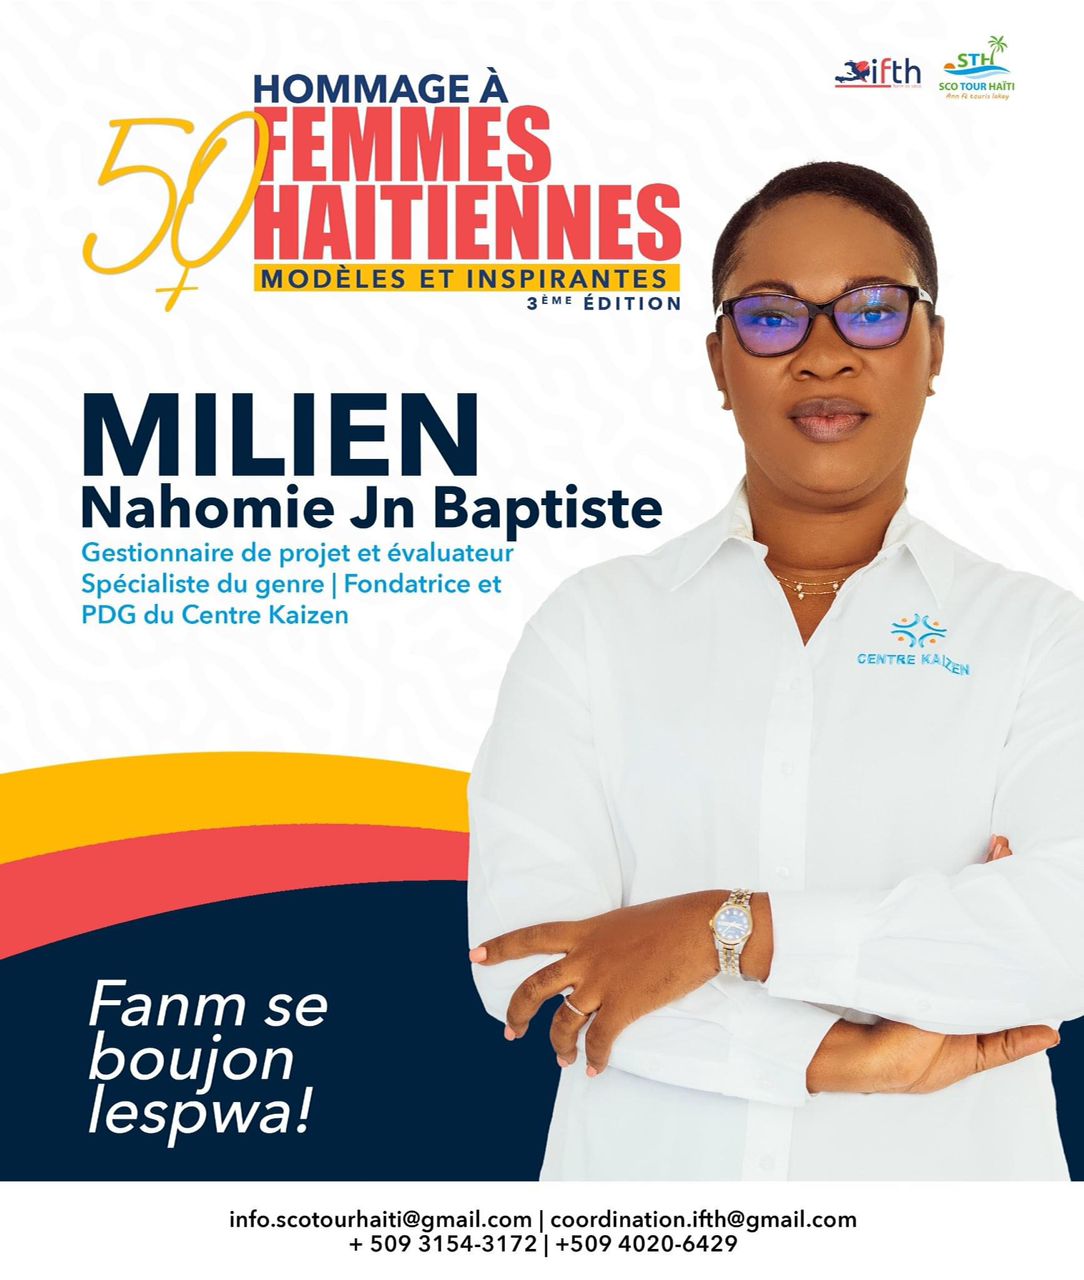 3e edition du projet : Hommage aux 50 femmes haitiennes modèles et inspirantes